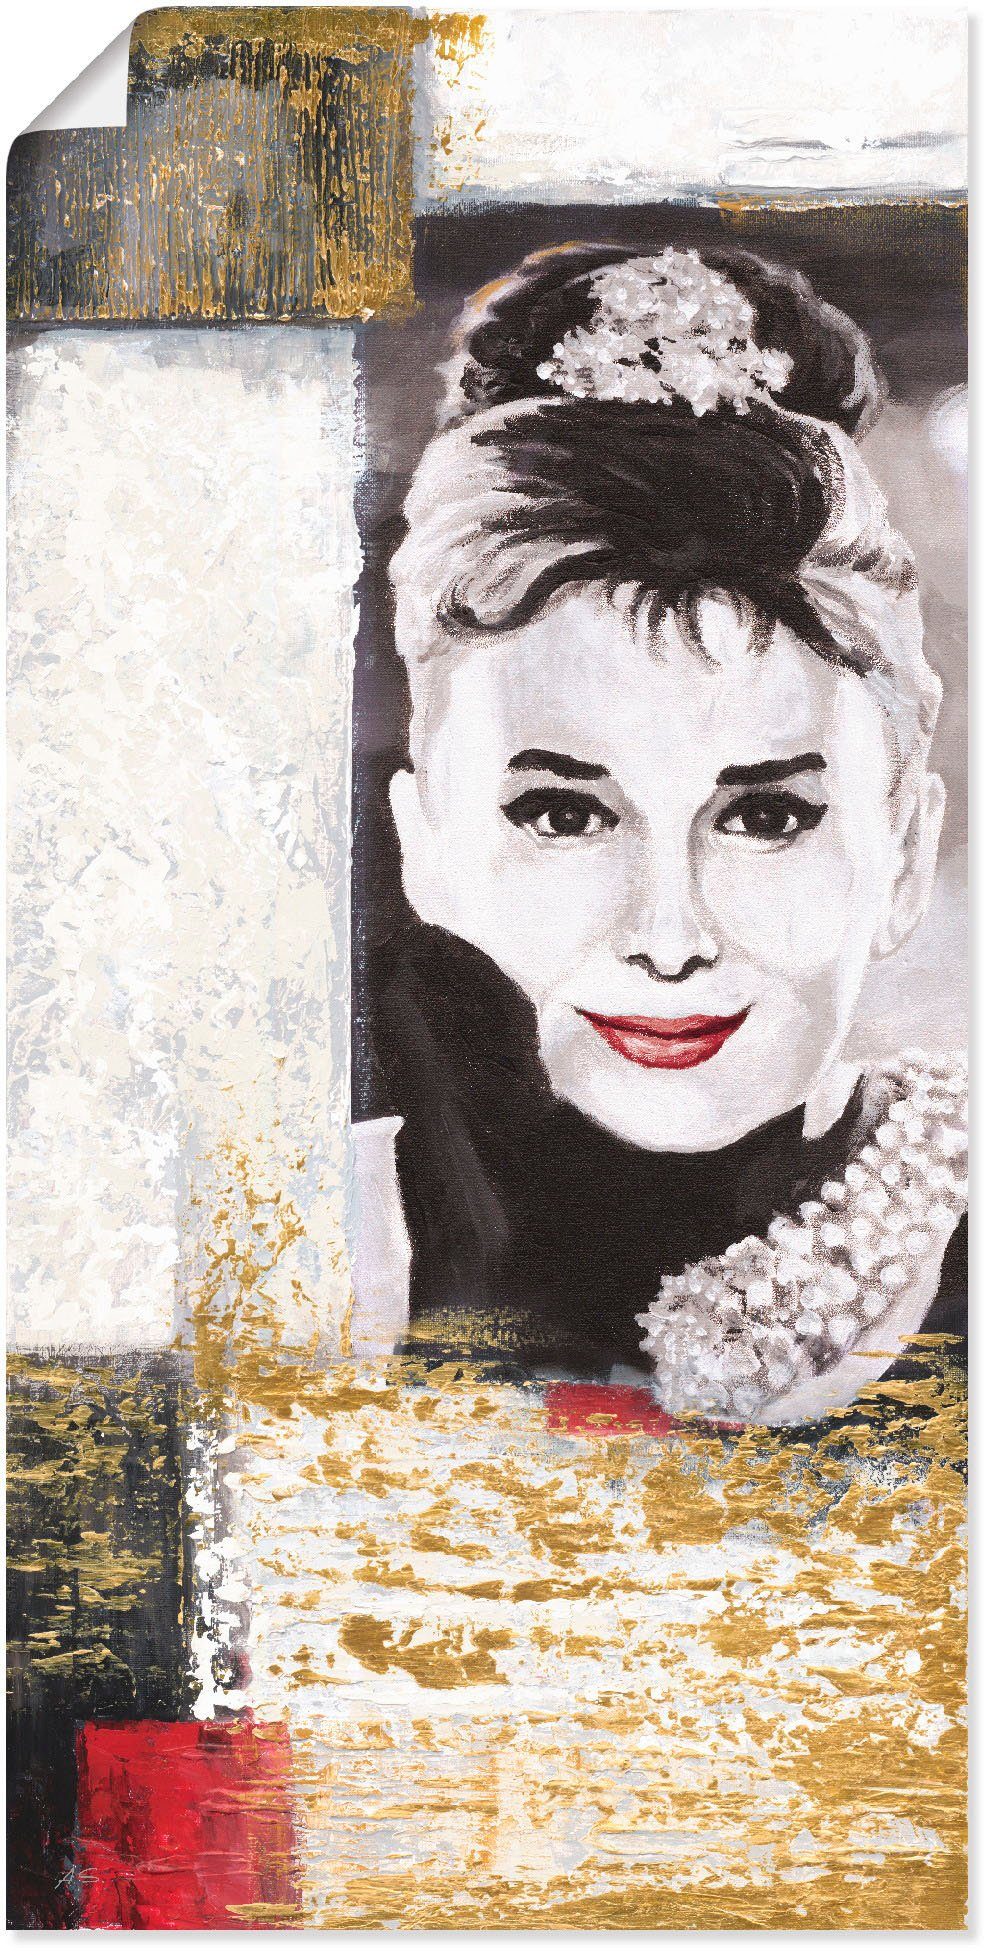 Artland Artprint Hollywood legenden VI - Audrey Hepburn in vele afmetingen & productsoorten -artprint op linnen, poster, muursticker / wandfolie ook geschikt voor de badkamer (1 st